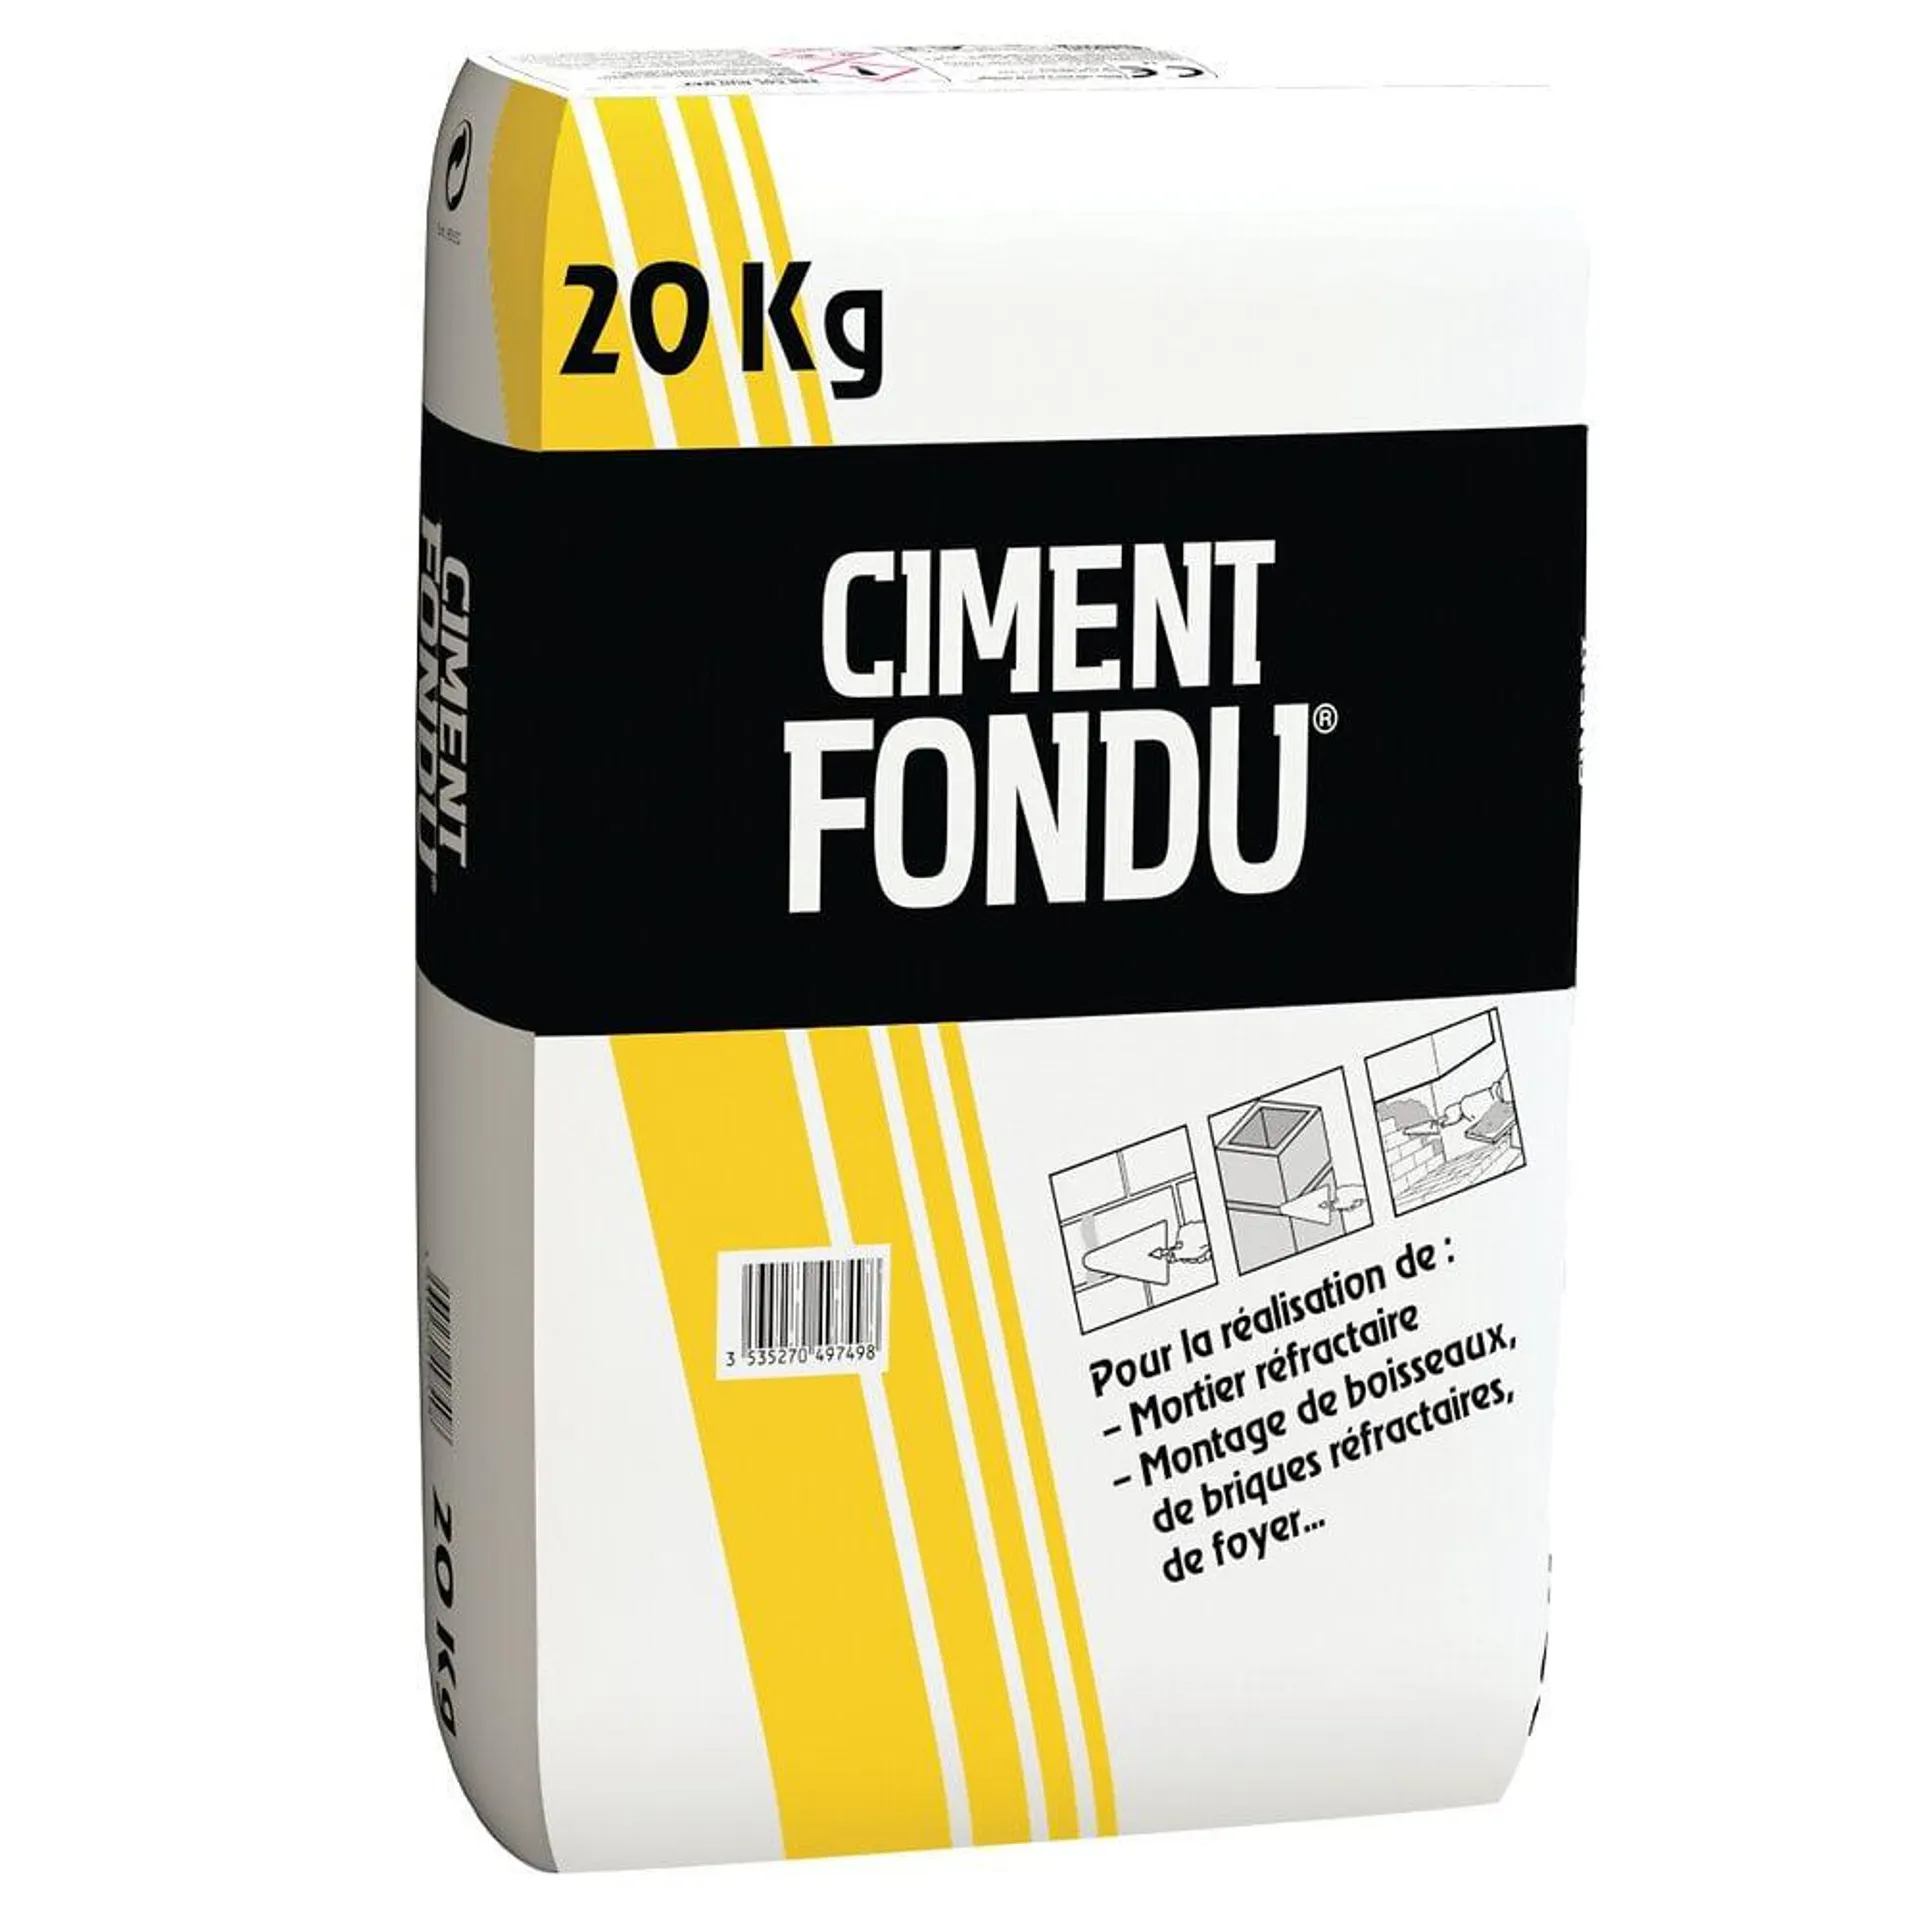 Ciment fondu - 20kg